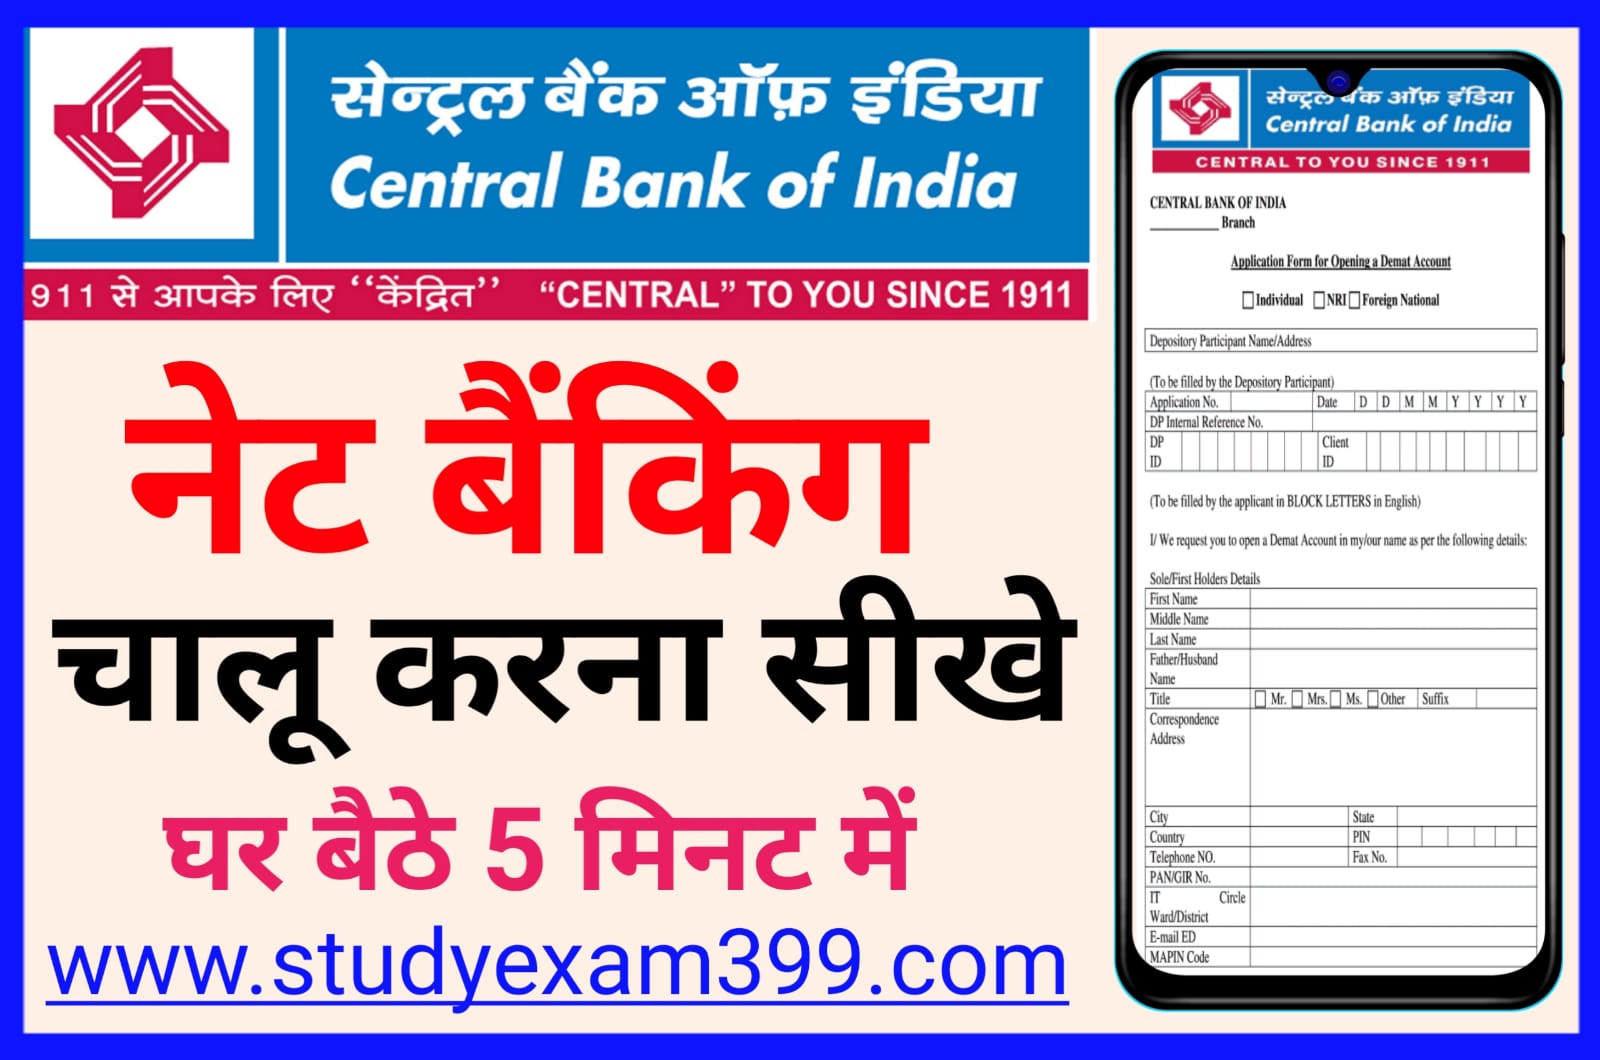 Central Bank Of India Net Banking Kaise Chalu Kare - सेंट्रल बैंक ऑफ इंडिया में नेट बैंकिंग घर बैठे ऑनलाइन के माध्यम से कैसे चालू करें जानिए पूरा प्रोसेस